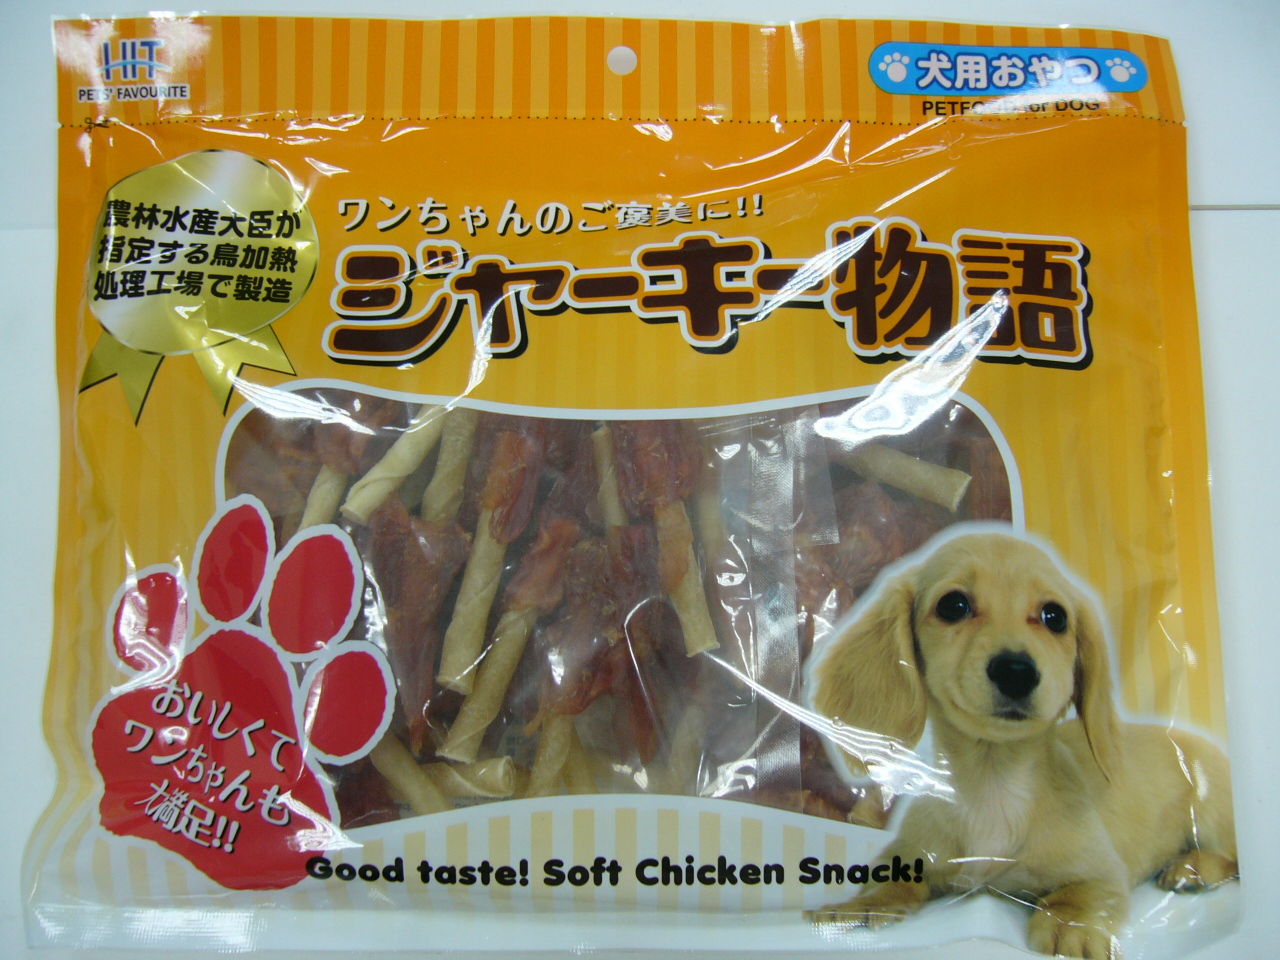 海特雞肉棒50支-小
HIT Soft Chicken + T/Stick 2.5" @50pcs(25pcs x 2)